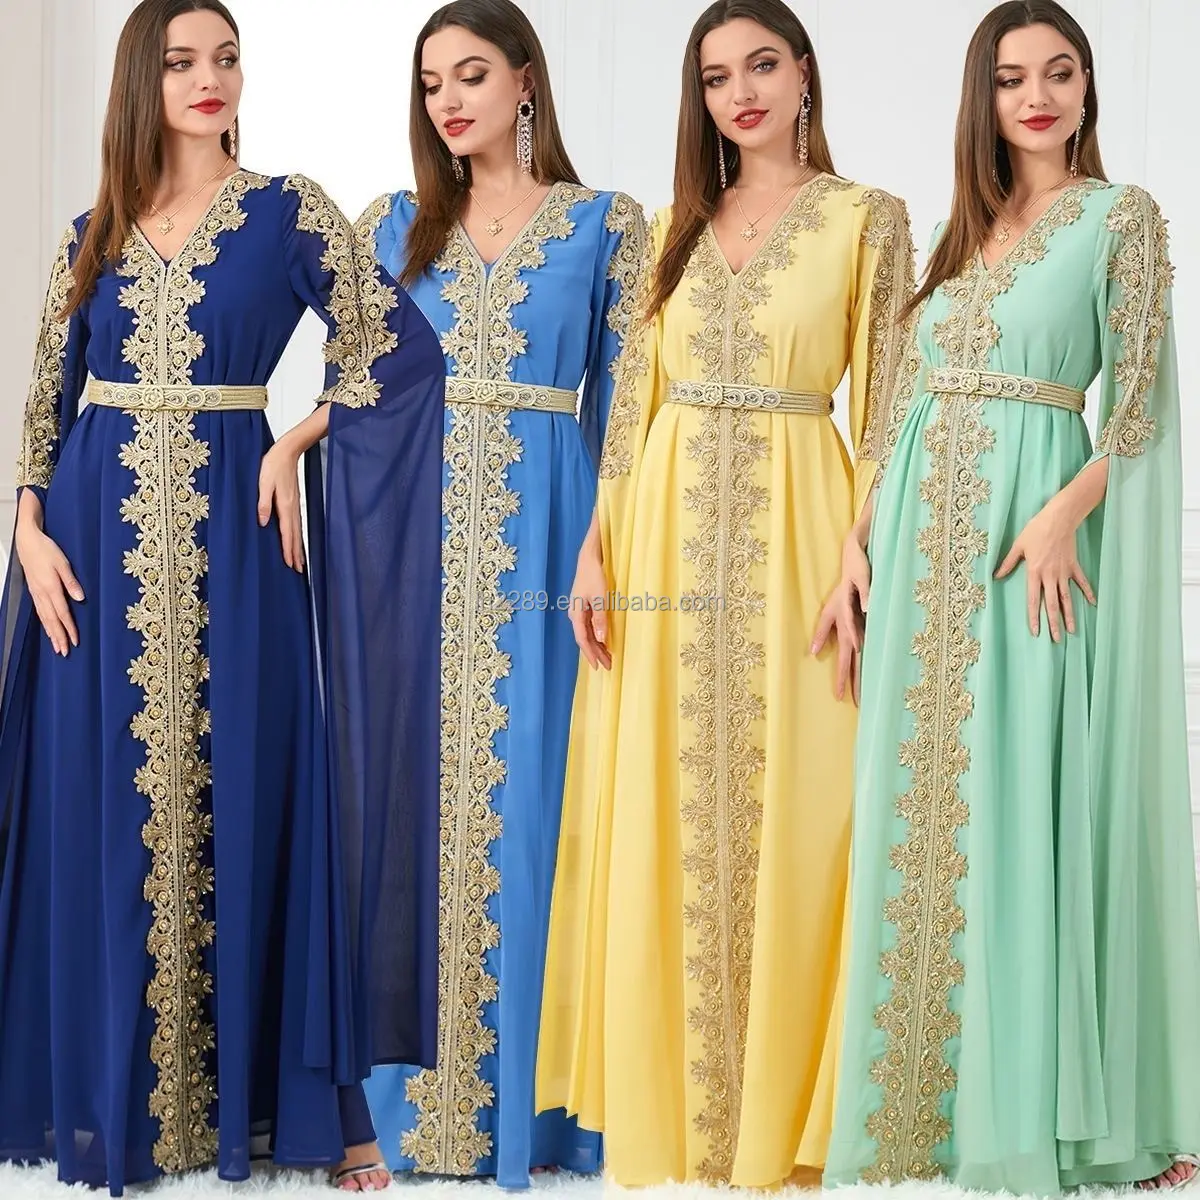 Vêtements de luxe islamiques pour le Ramadan Collection de robes musulmanes Abaya turque de Dubaï indienne pour femmes Robe abaya marocaine de style ethnique